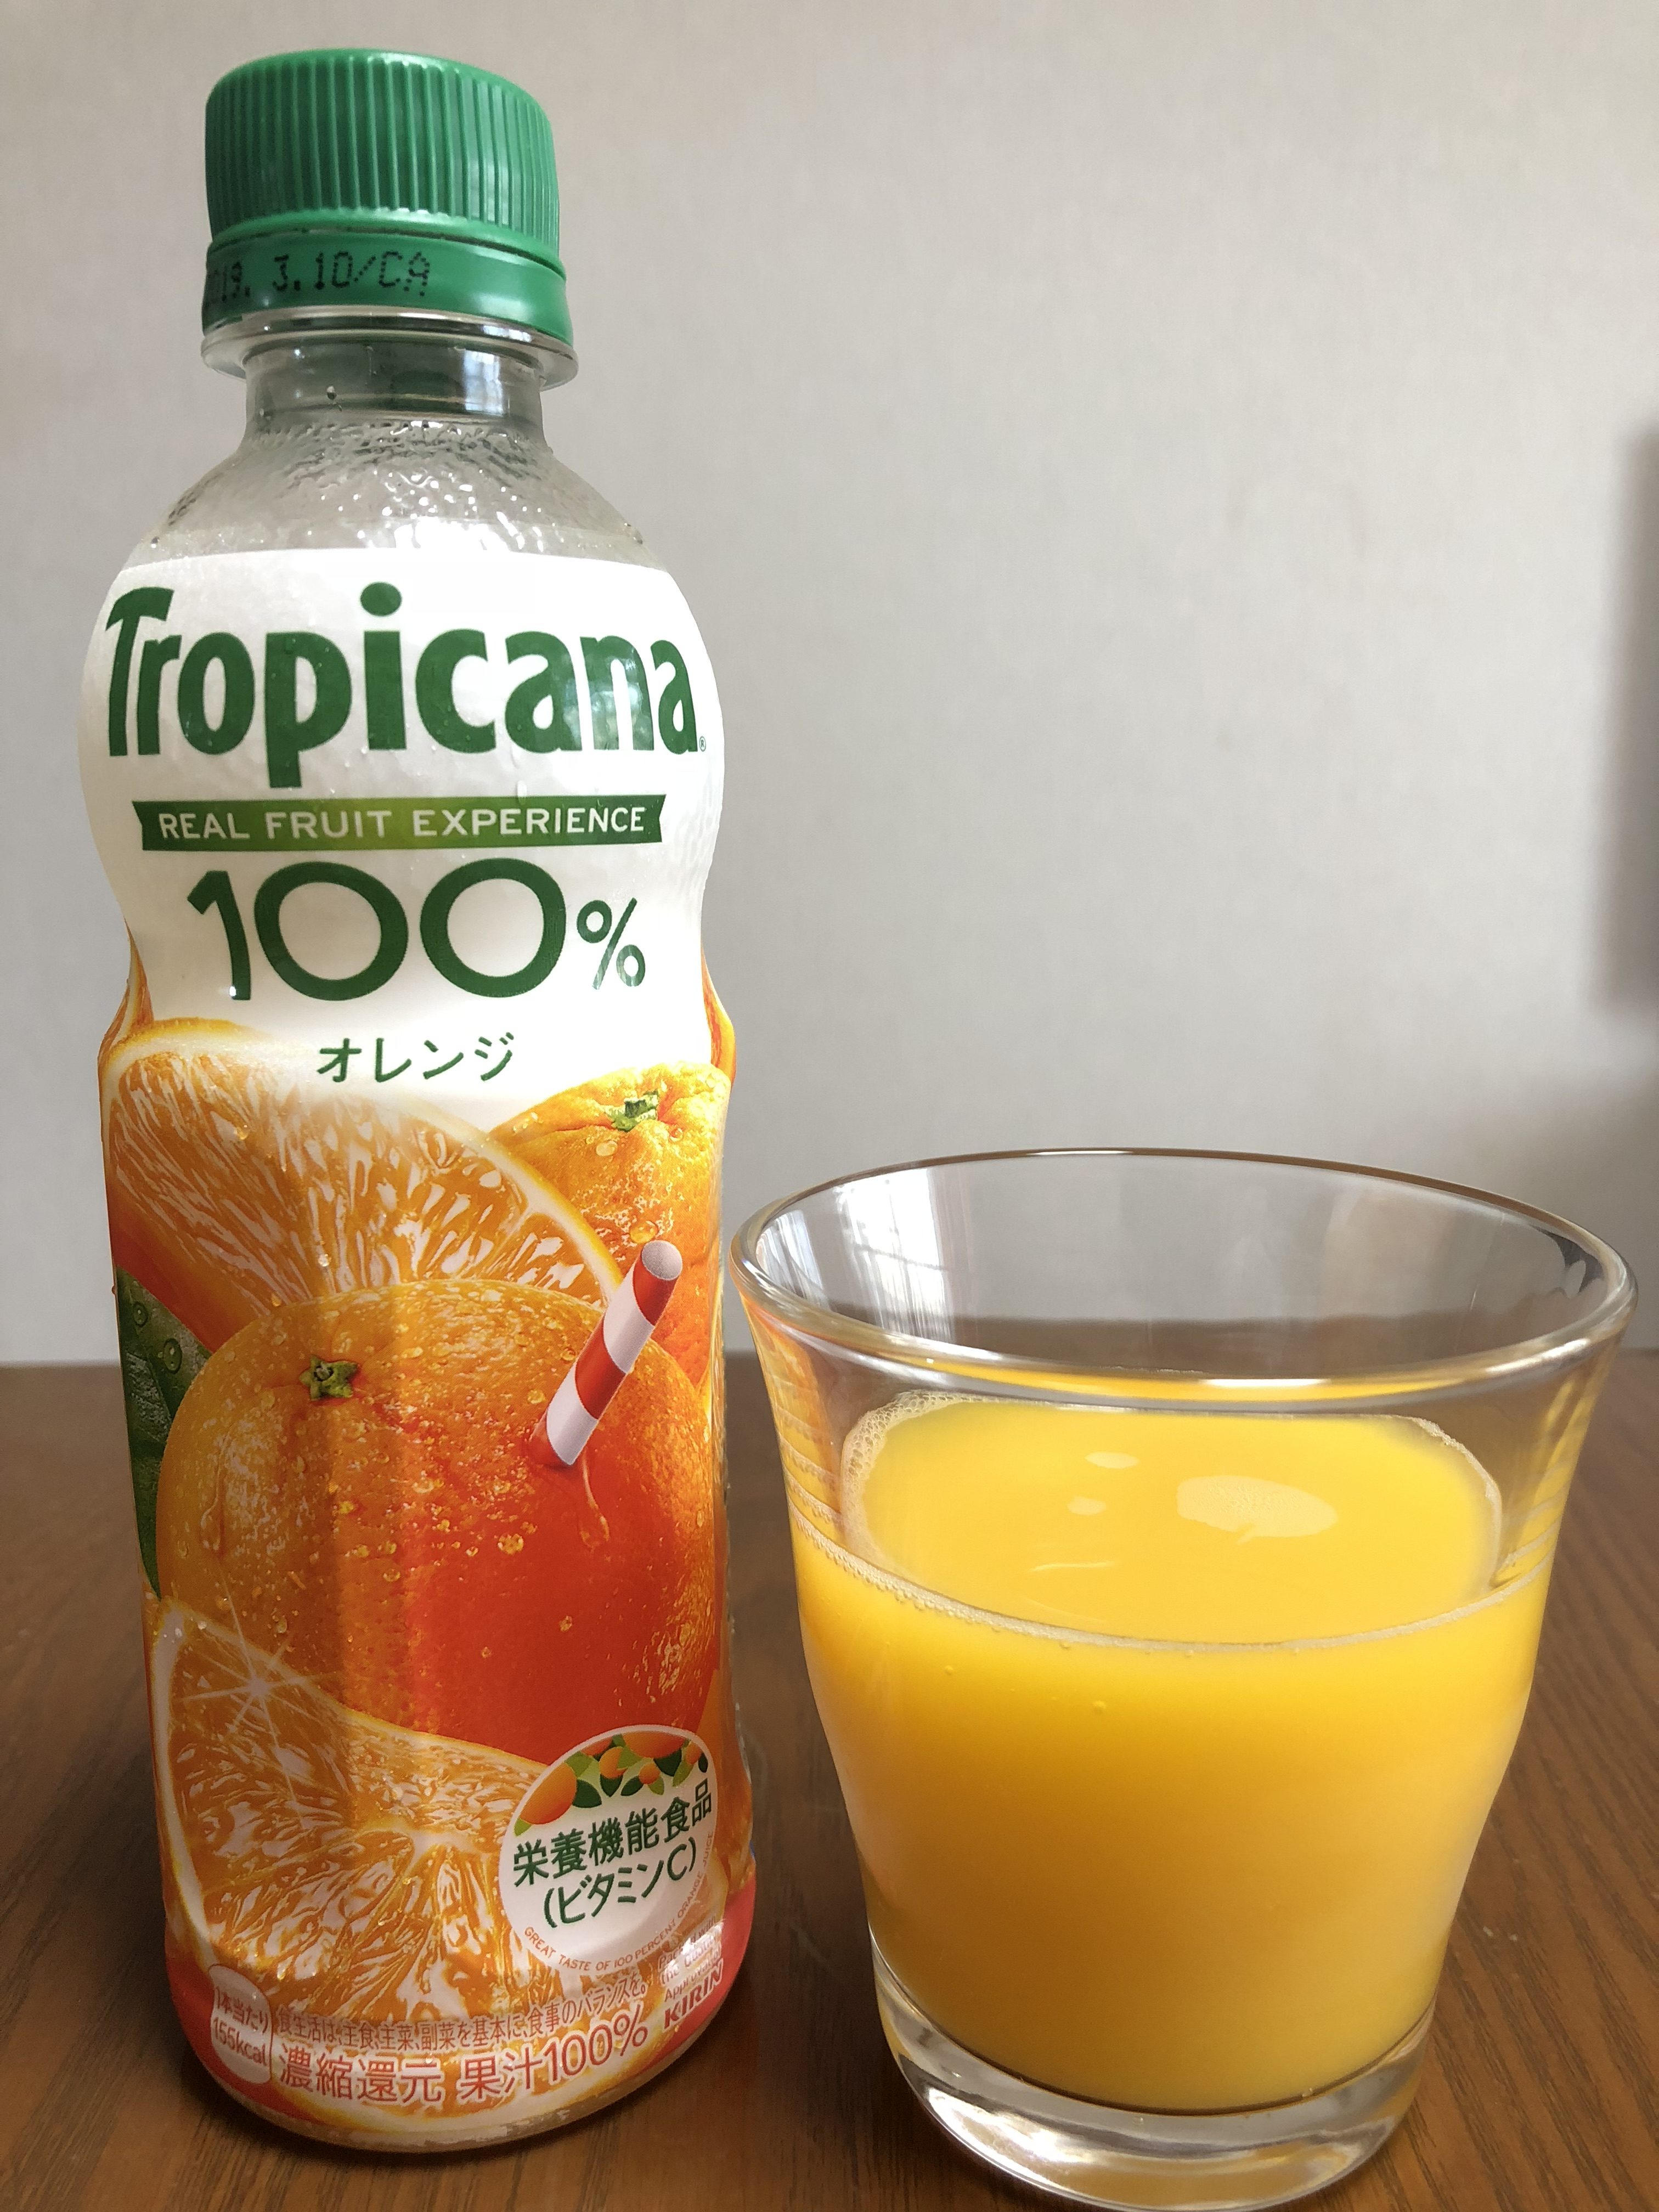 コンビニで買えるオレンジジュース セブンイレブン編 2018